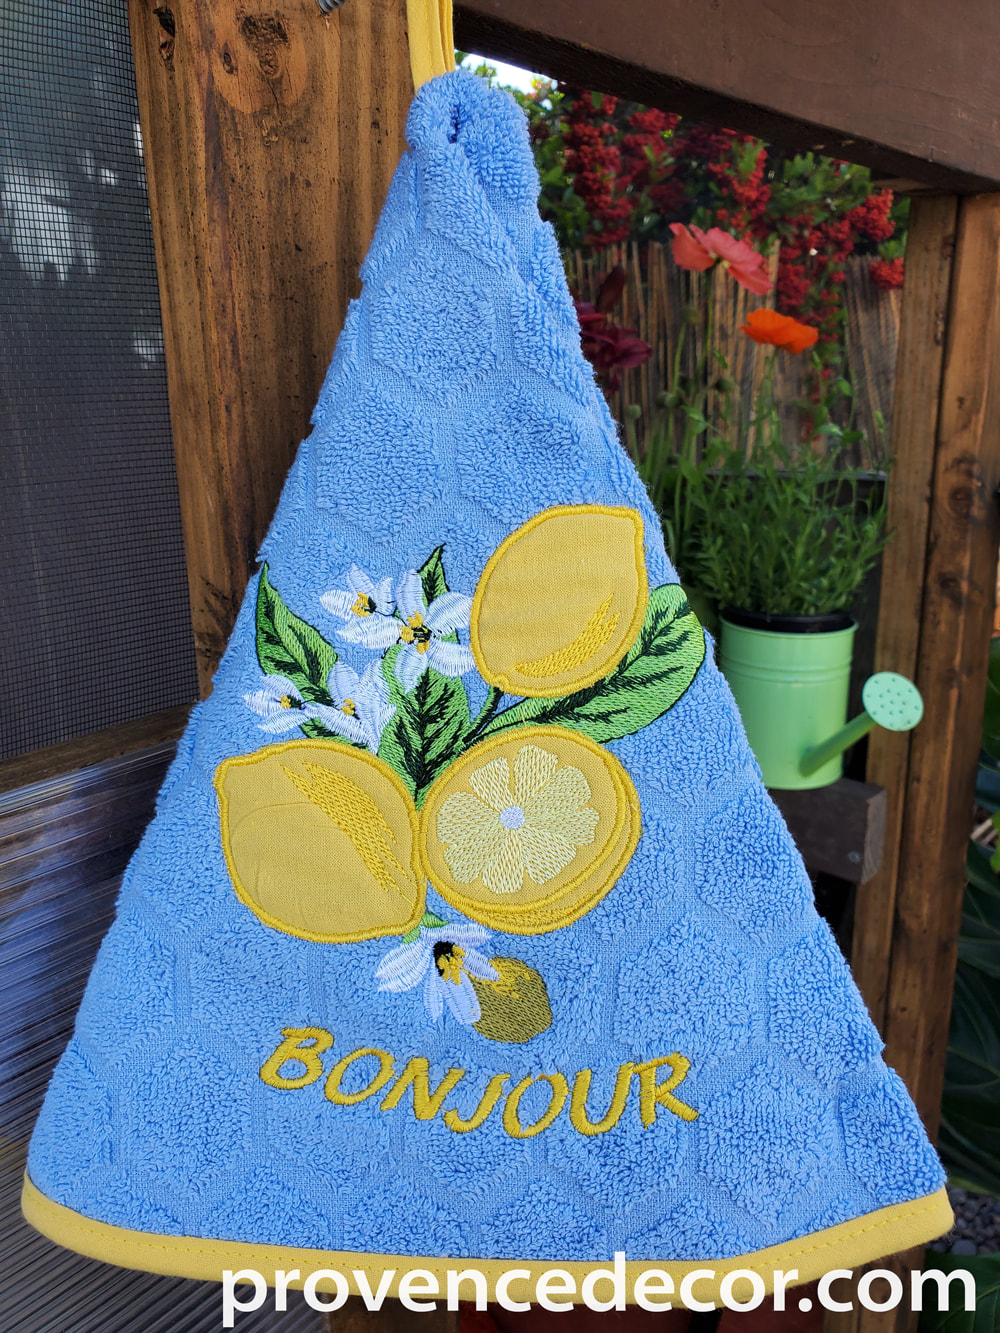 Lemon Decorative Kitchen Towel